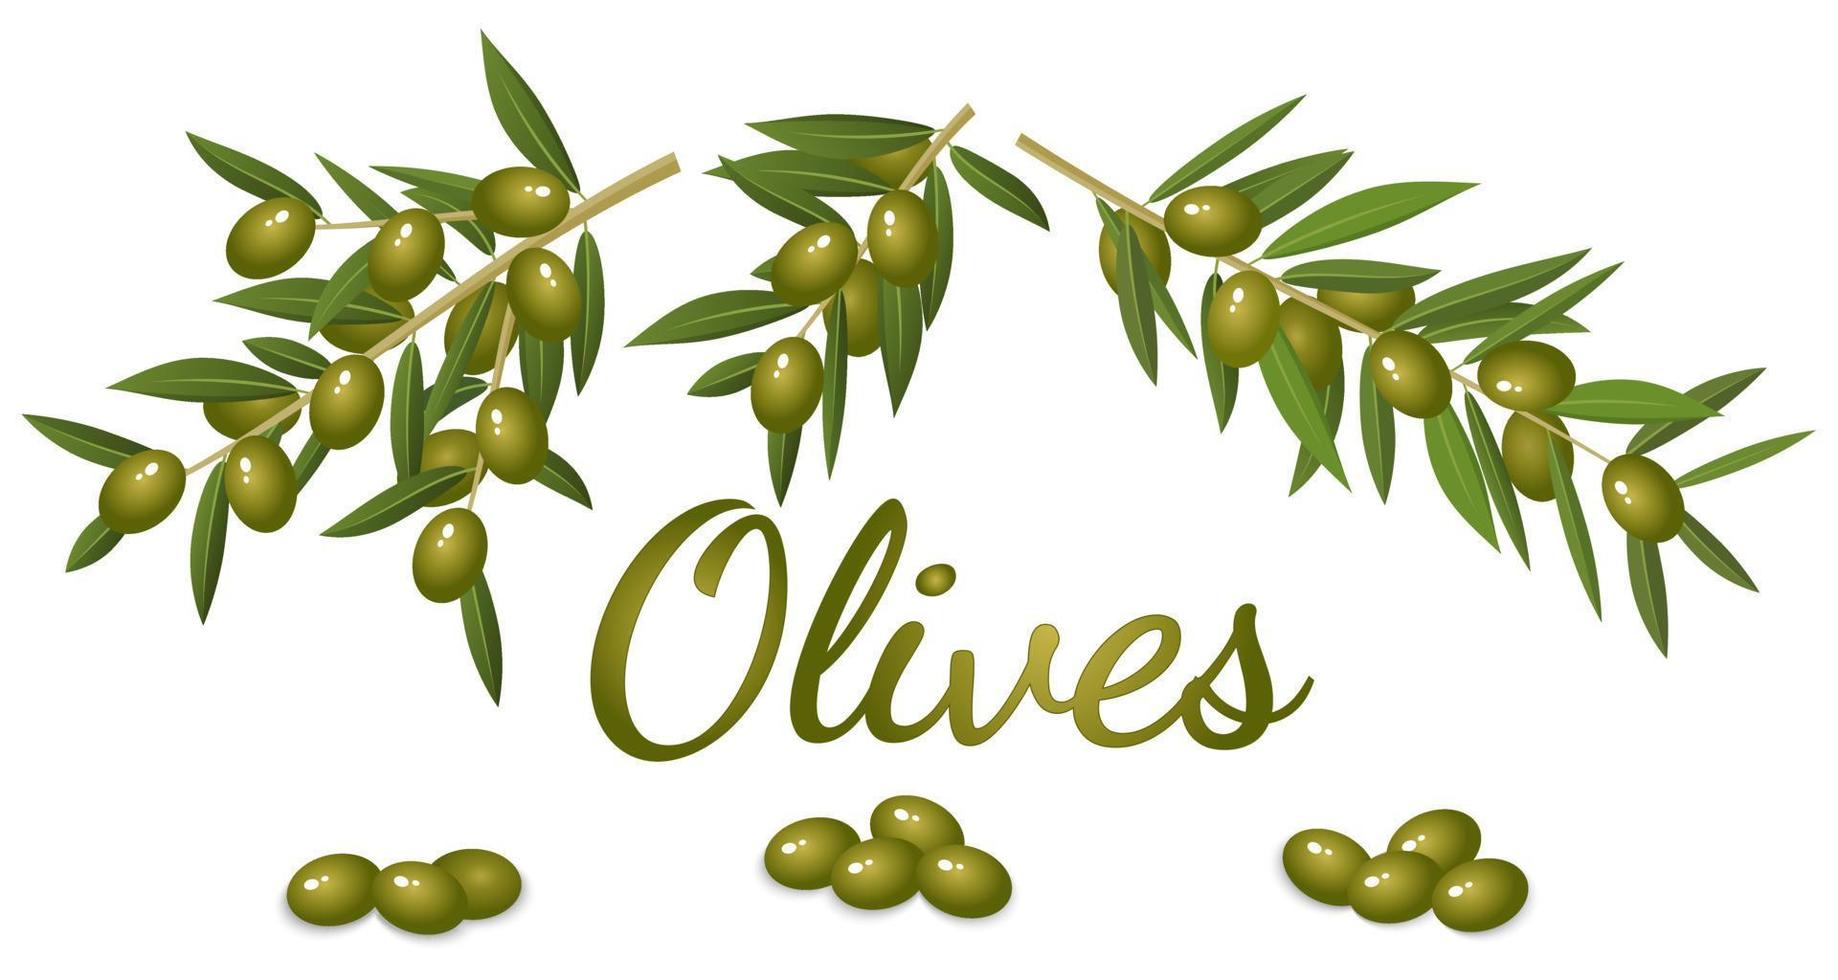 grenar och frukt av de oliv träd.realistiskt bild av oliver och grenar med blad.platta vektor bild.